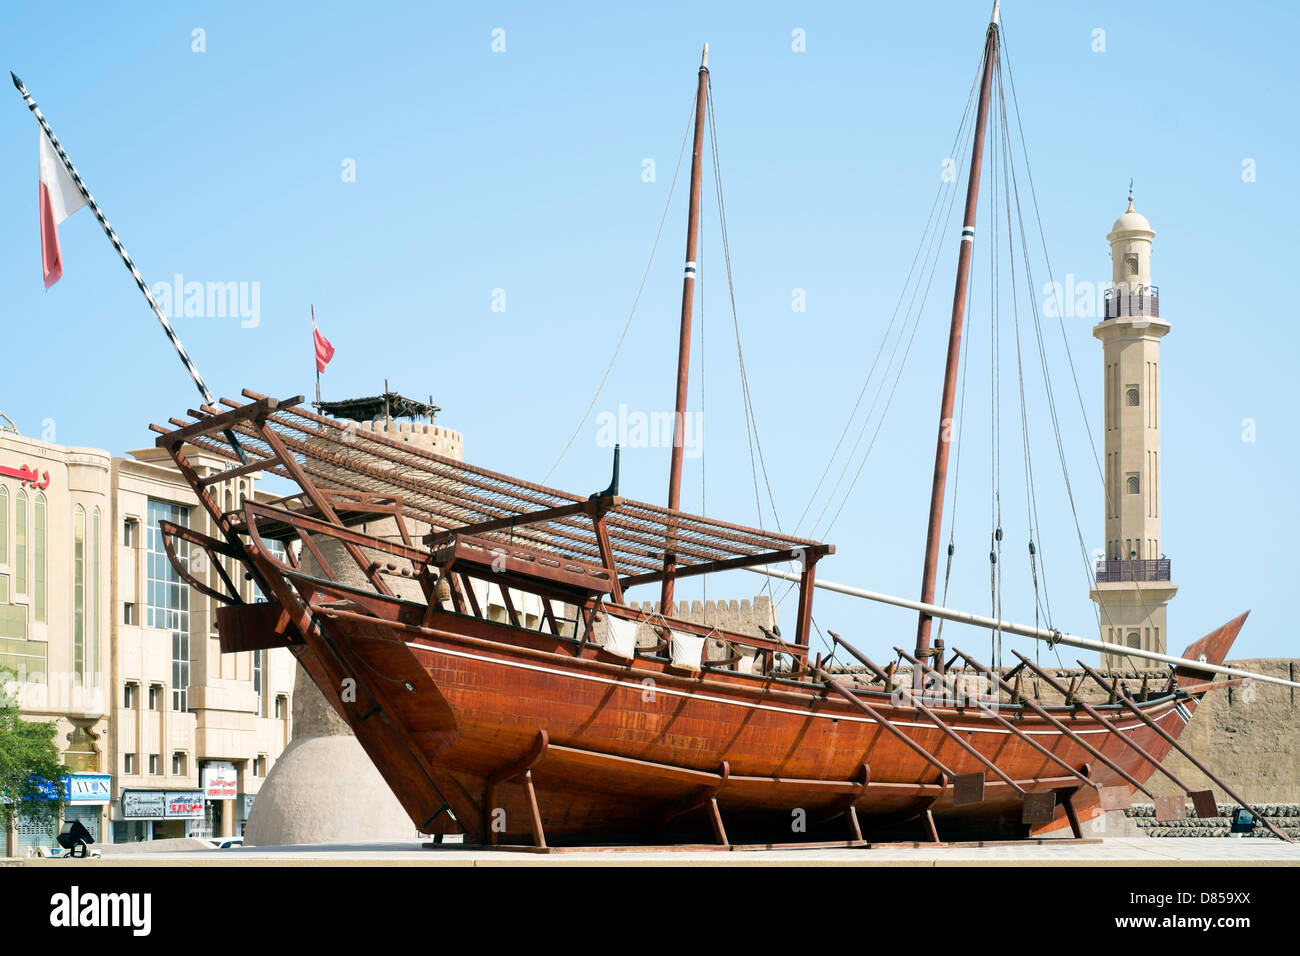 Dubai Museum in United Arab Emirates Stock Photo